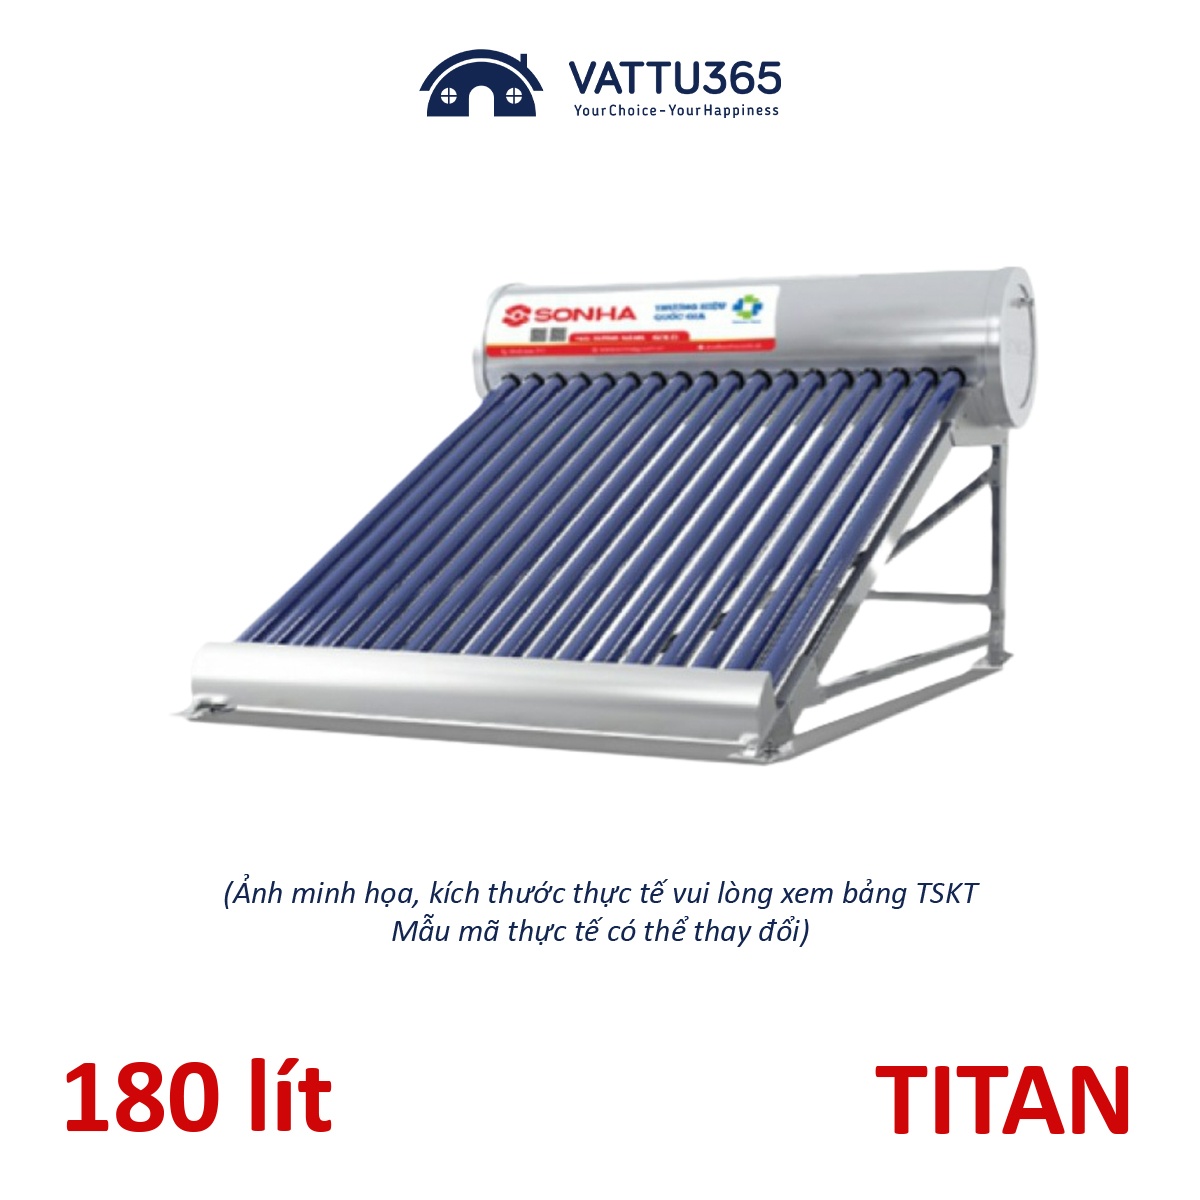 Máy nước nóng năng lượng mặt trời Sơn Hà TDN TITAN 180 Lít